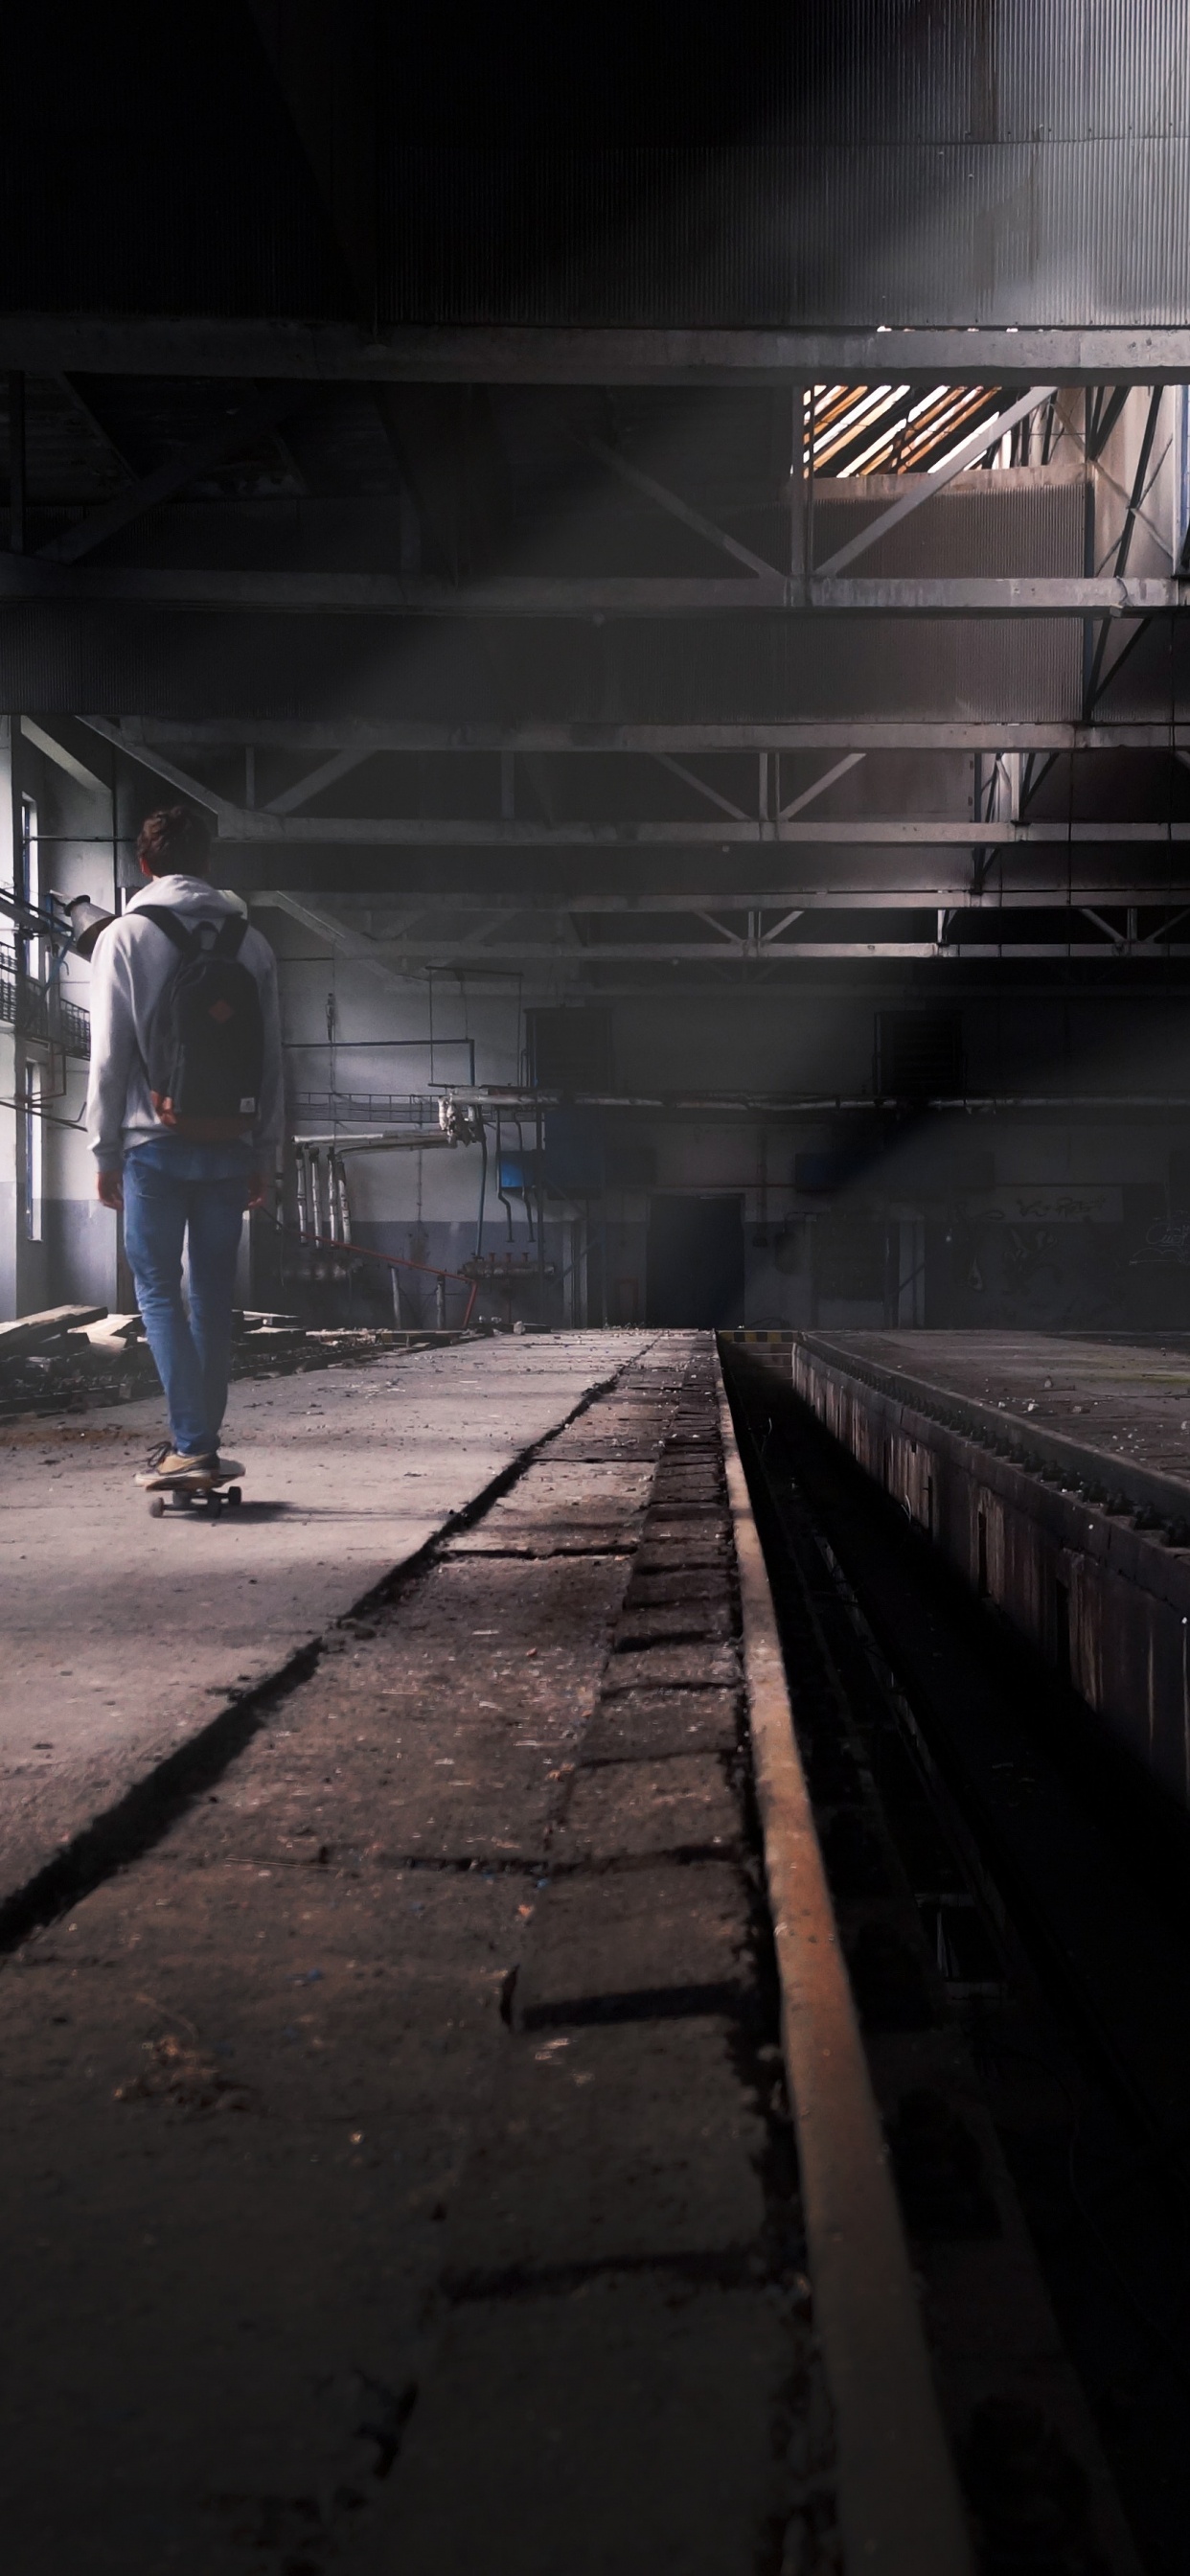 Man in Blue Denim Jeans Walking on Train Station. Wallpaper in 1242x2688 Resolution